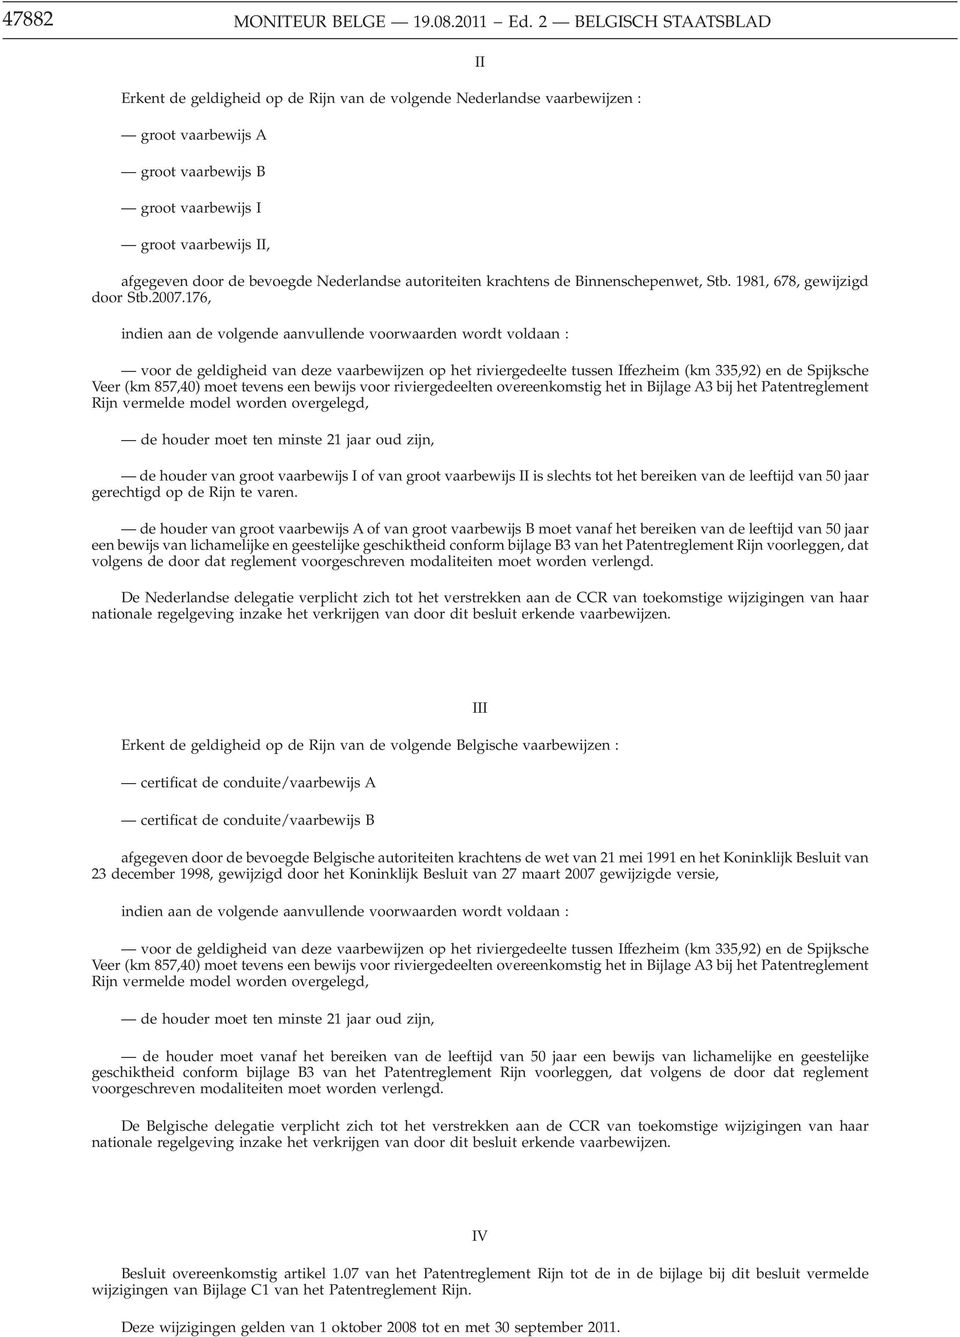 bevoegde Nederlandse autoriteiten krachtens de Binnenschepenwet, Stb. 1981, 678, gewijzigd door Stb.2007.